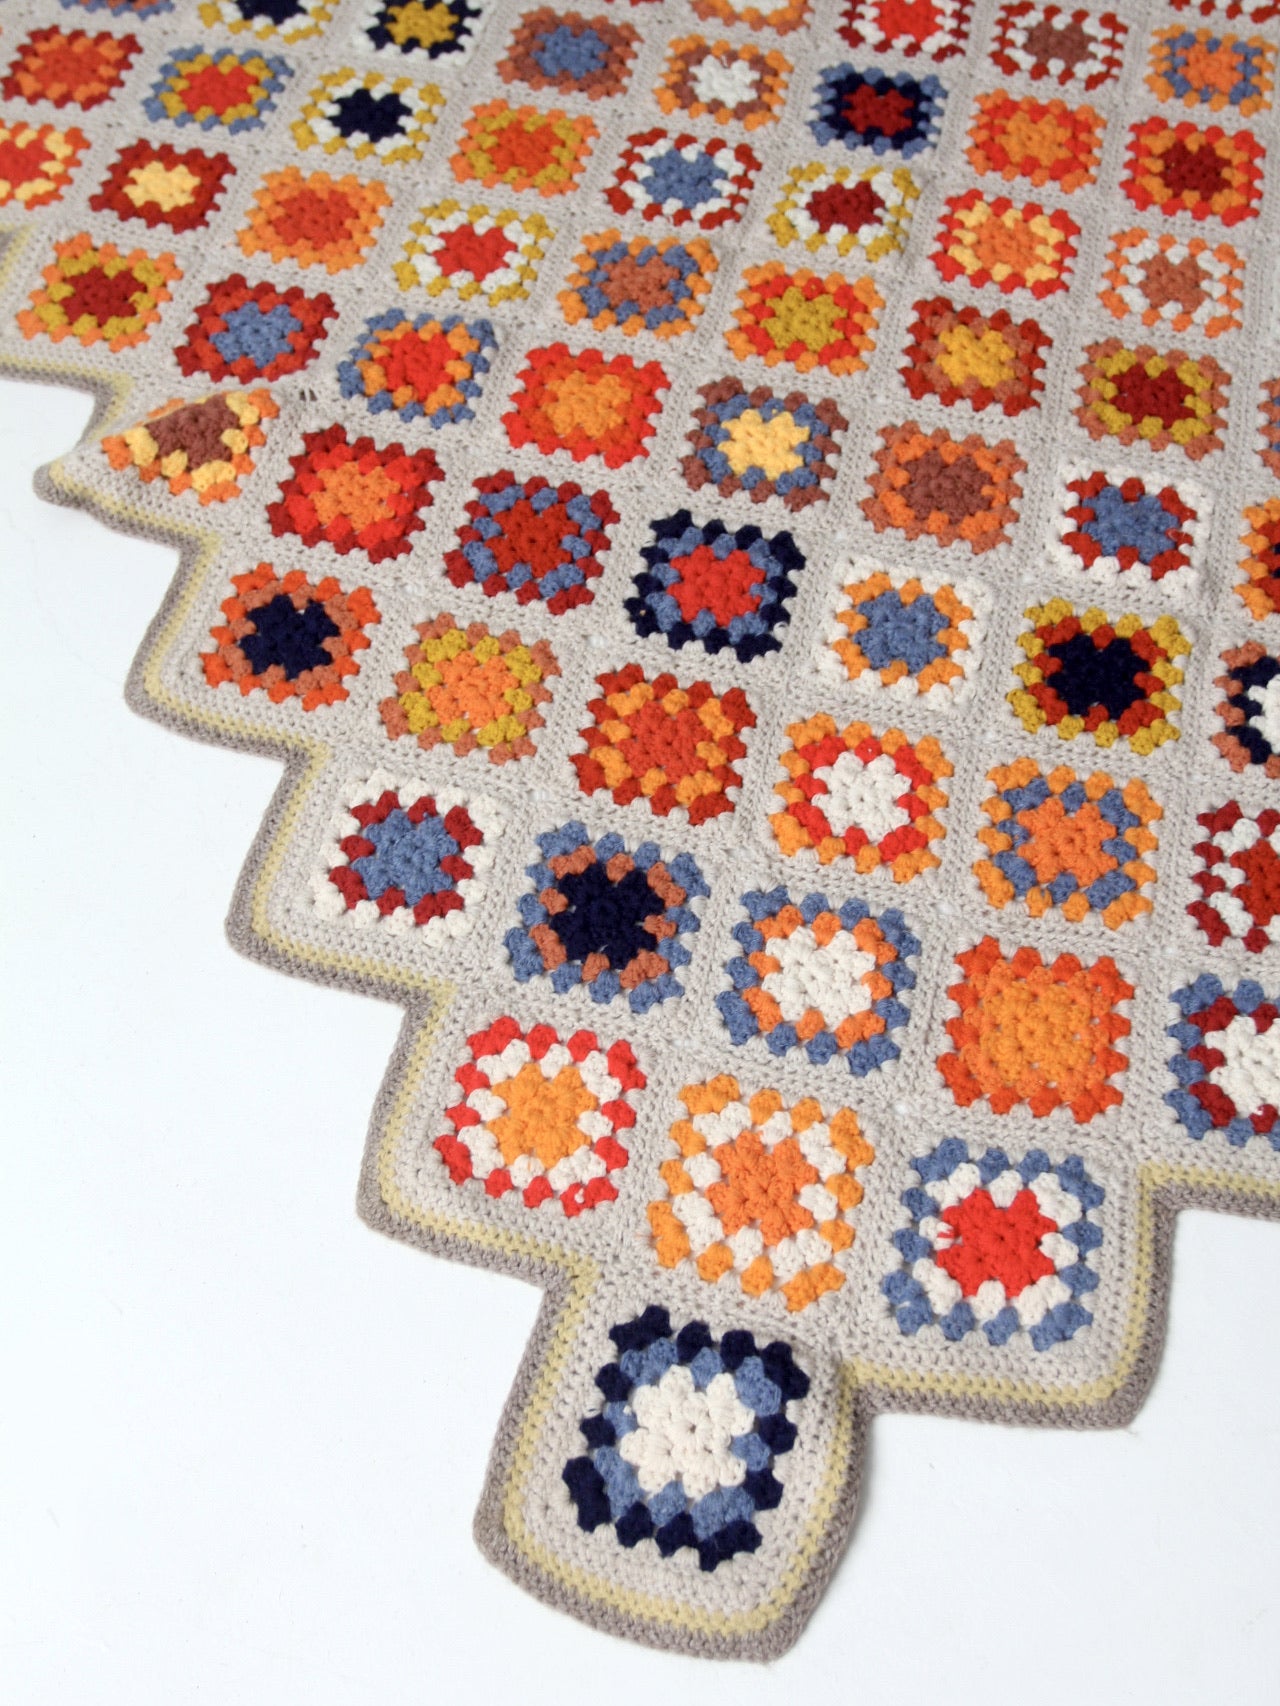 vintage crotchet granny square quilt